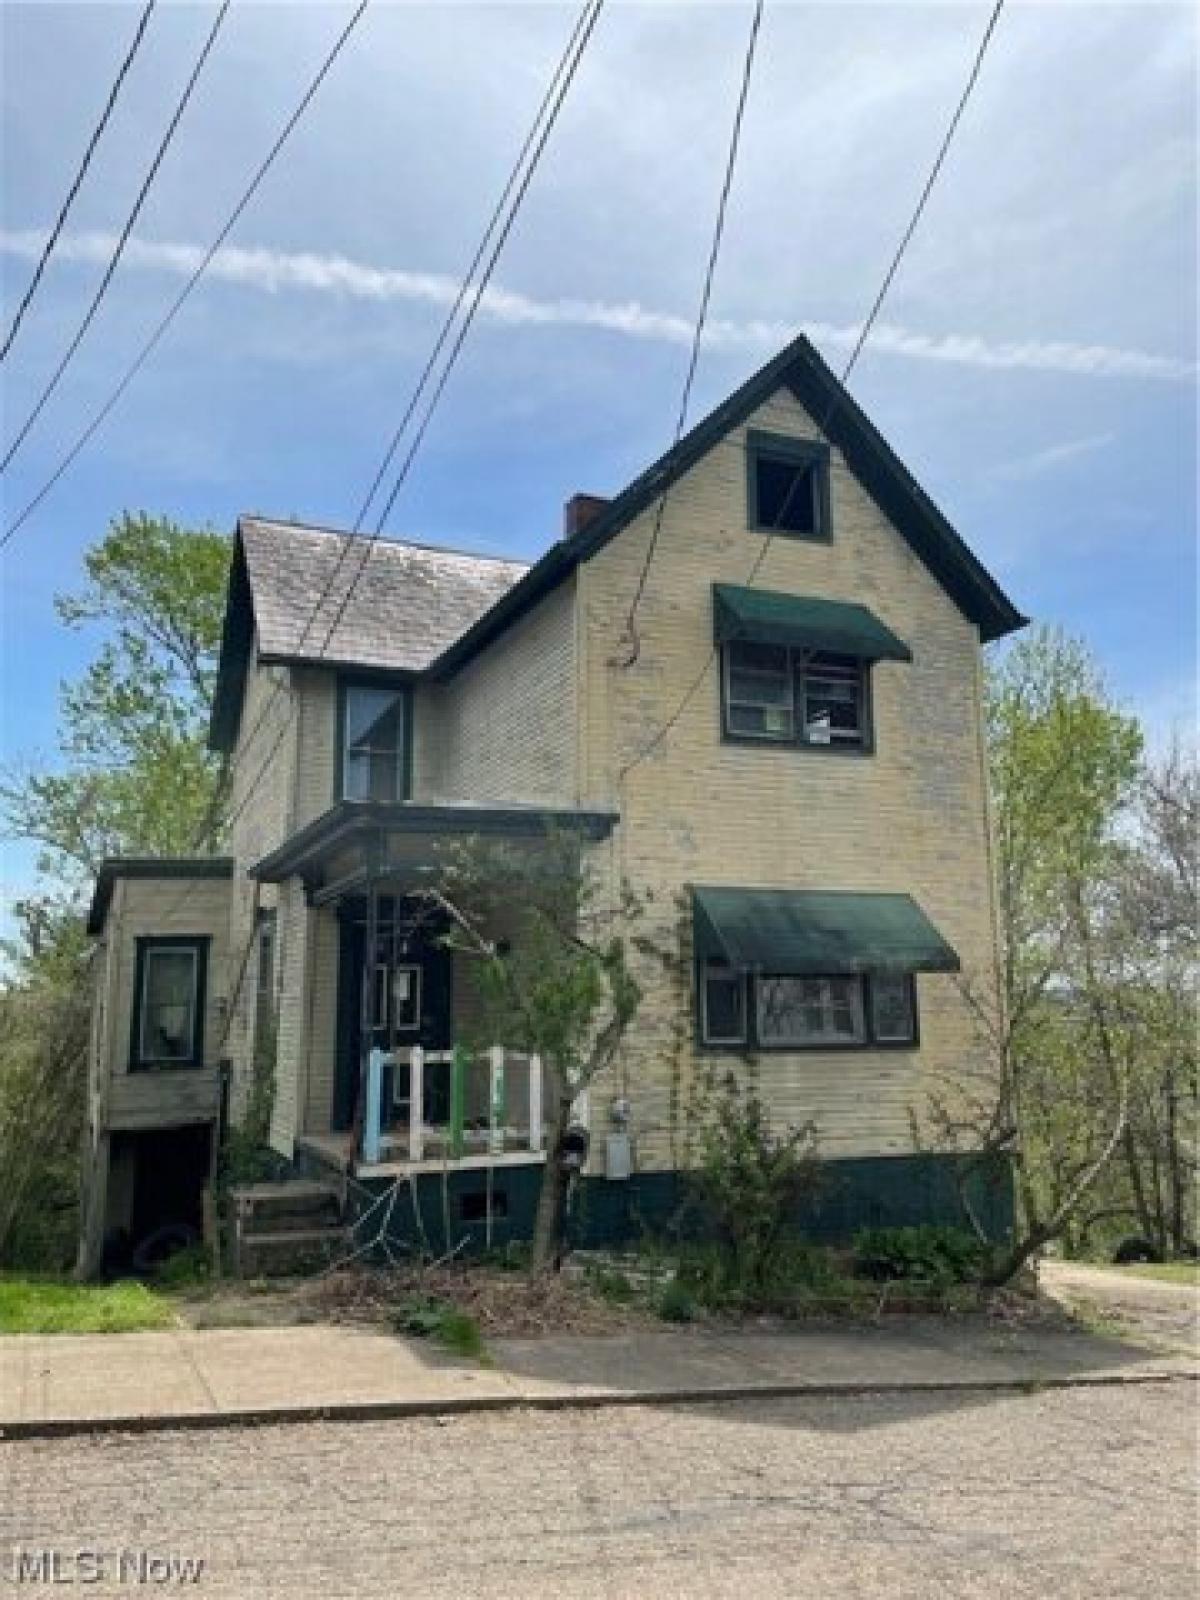 Picture of Home For Sale in Marietta, Ohio, United States